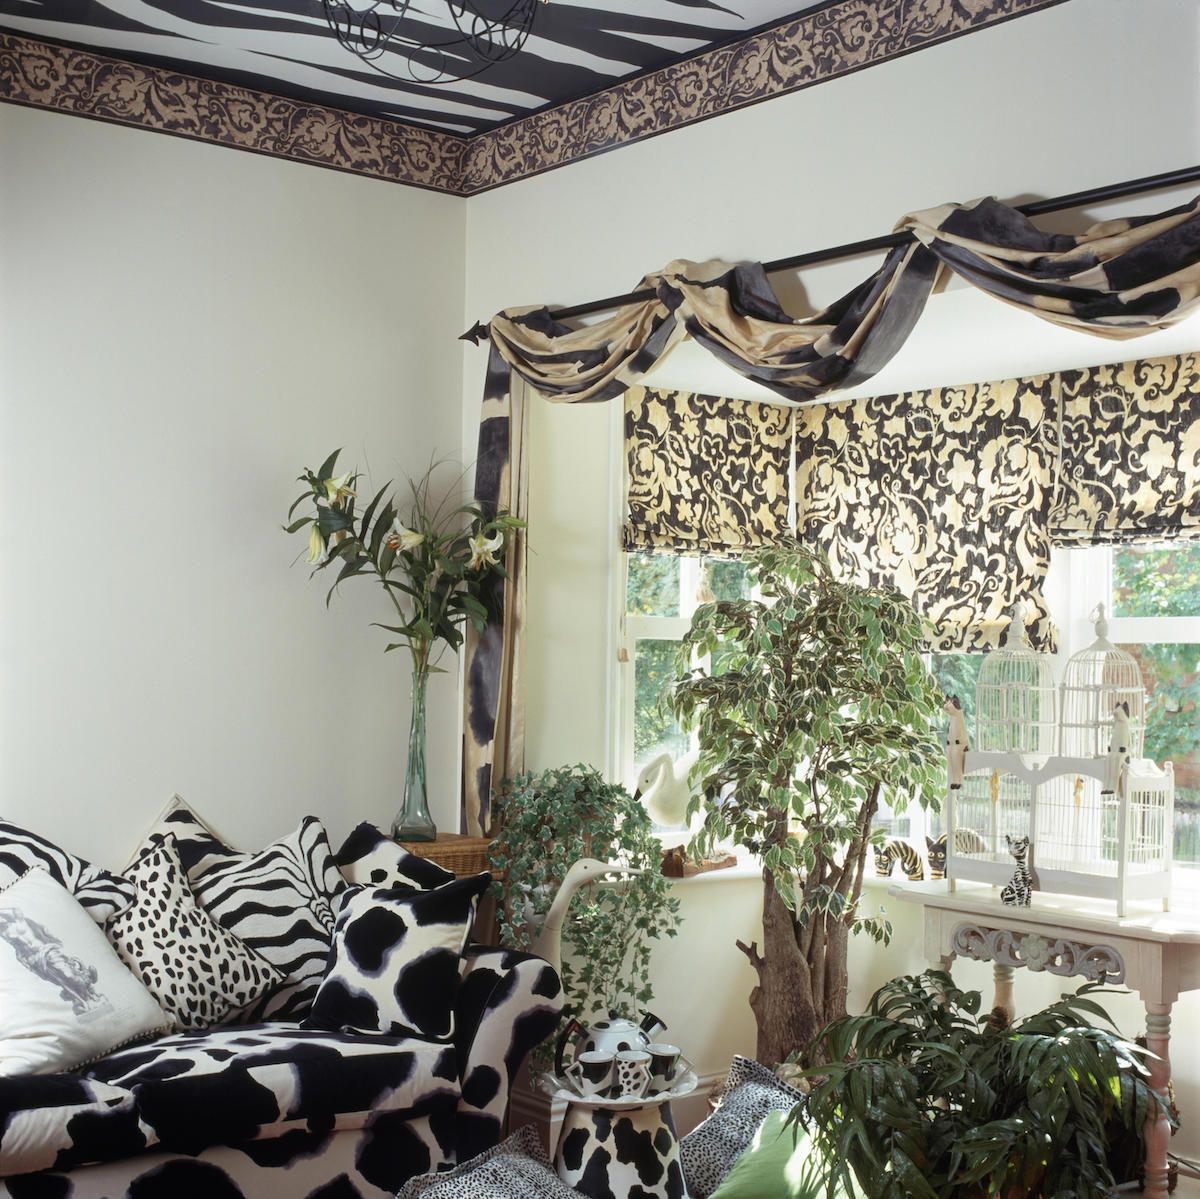 Ghế sofa và đệm in hình động vật đen + trắng trong phòng khách những năm chín mươi với vải xếp nếp trên cột phía trên cửa sổ